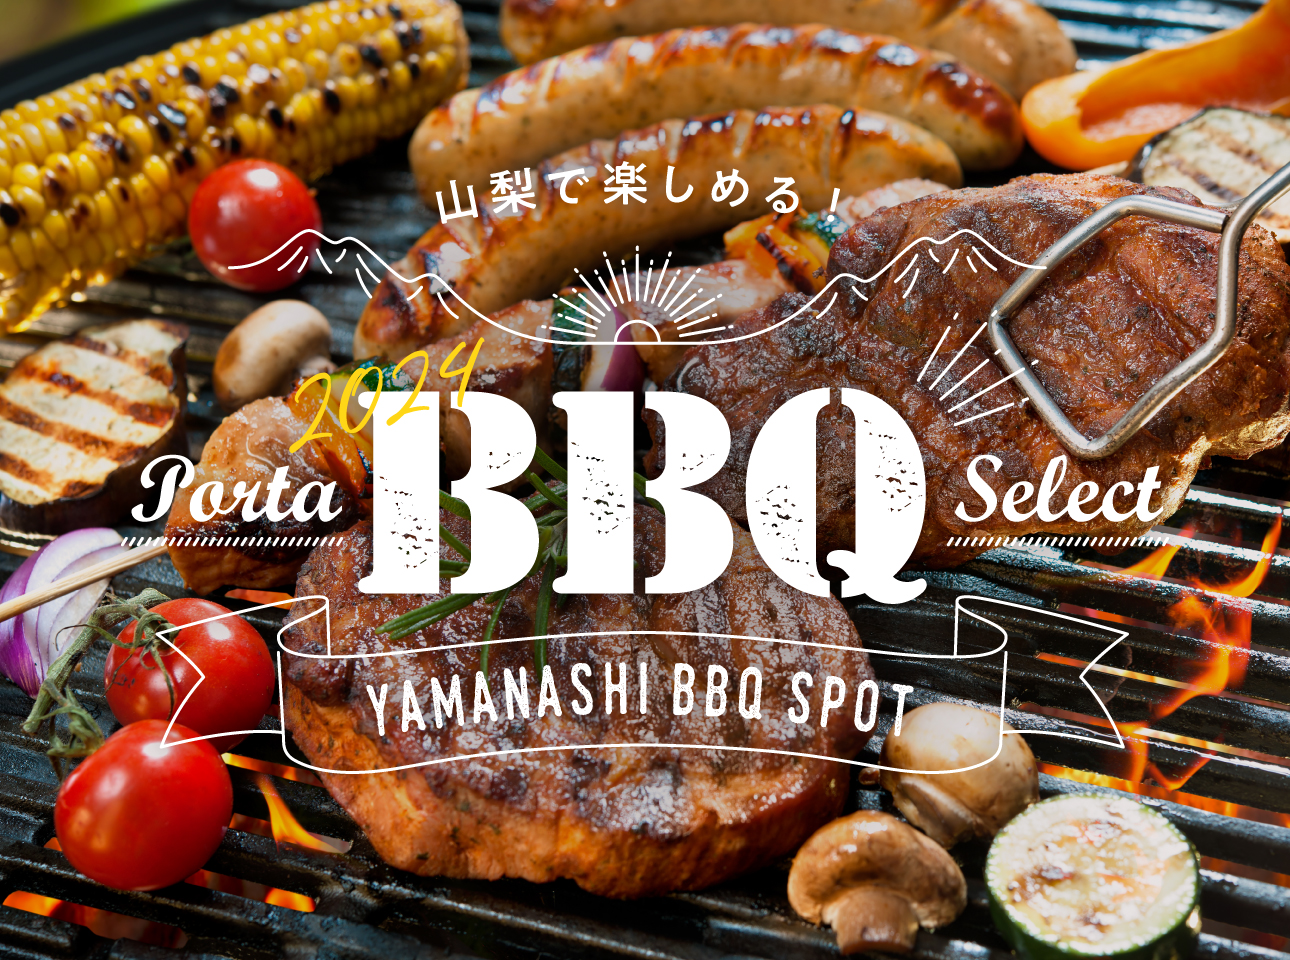 Enjoy in Yamanashi! portaBBQselect2024